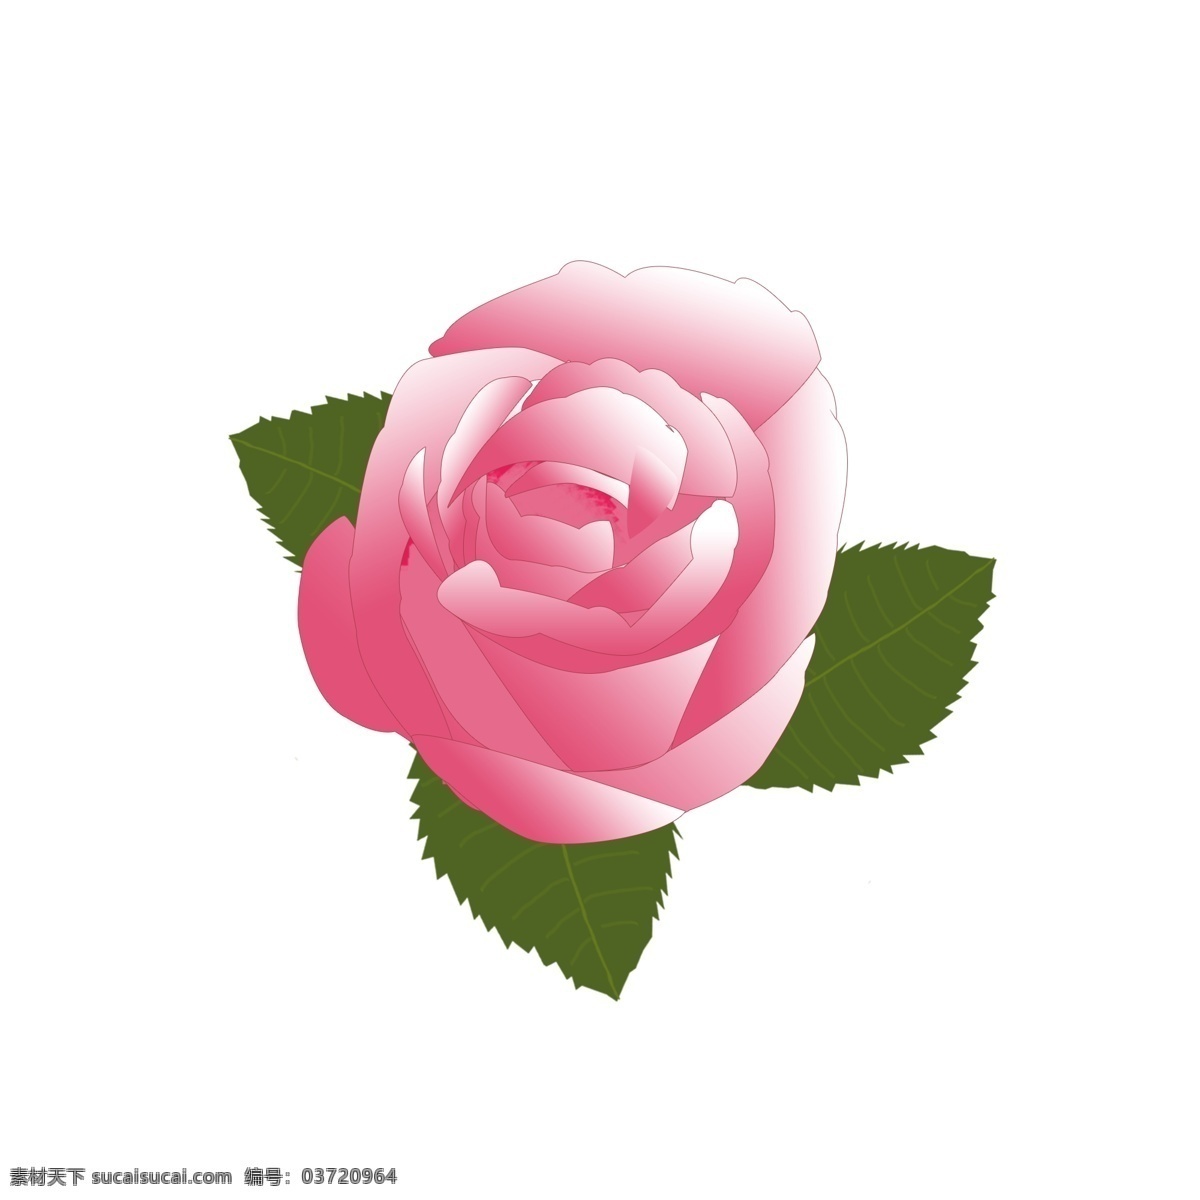 粉色 玫瑰 花朵 玫瑰花 元素 玫瑰花朵 粉色玫瑰 节日 情人节 玫瑰叶 粉色玫瑰花 玫瑰花素材